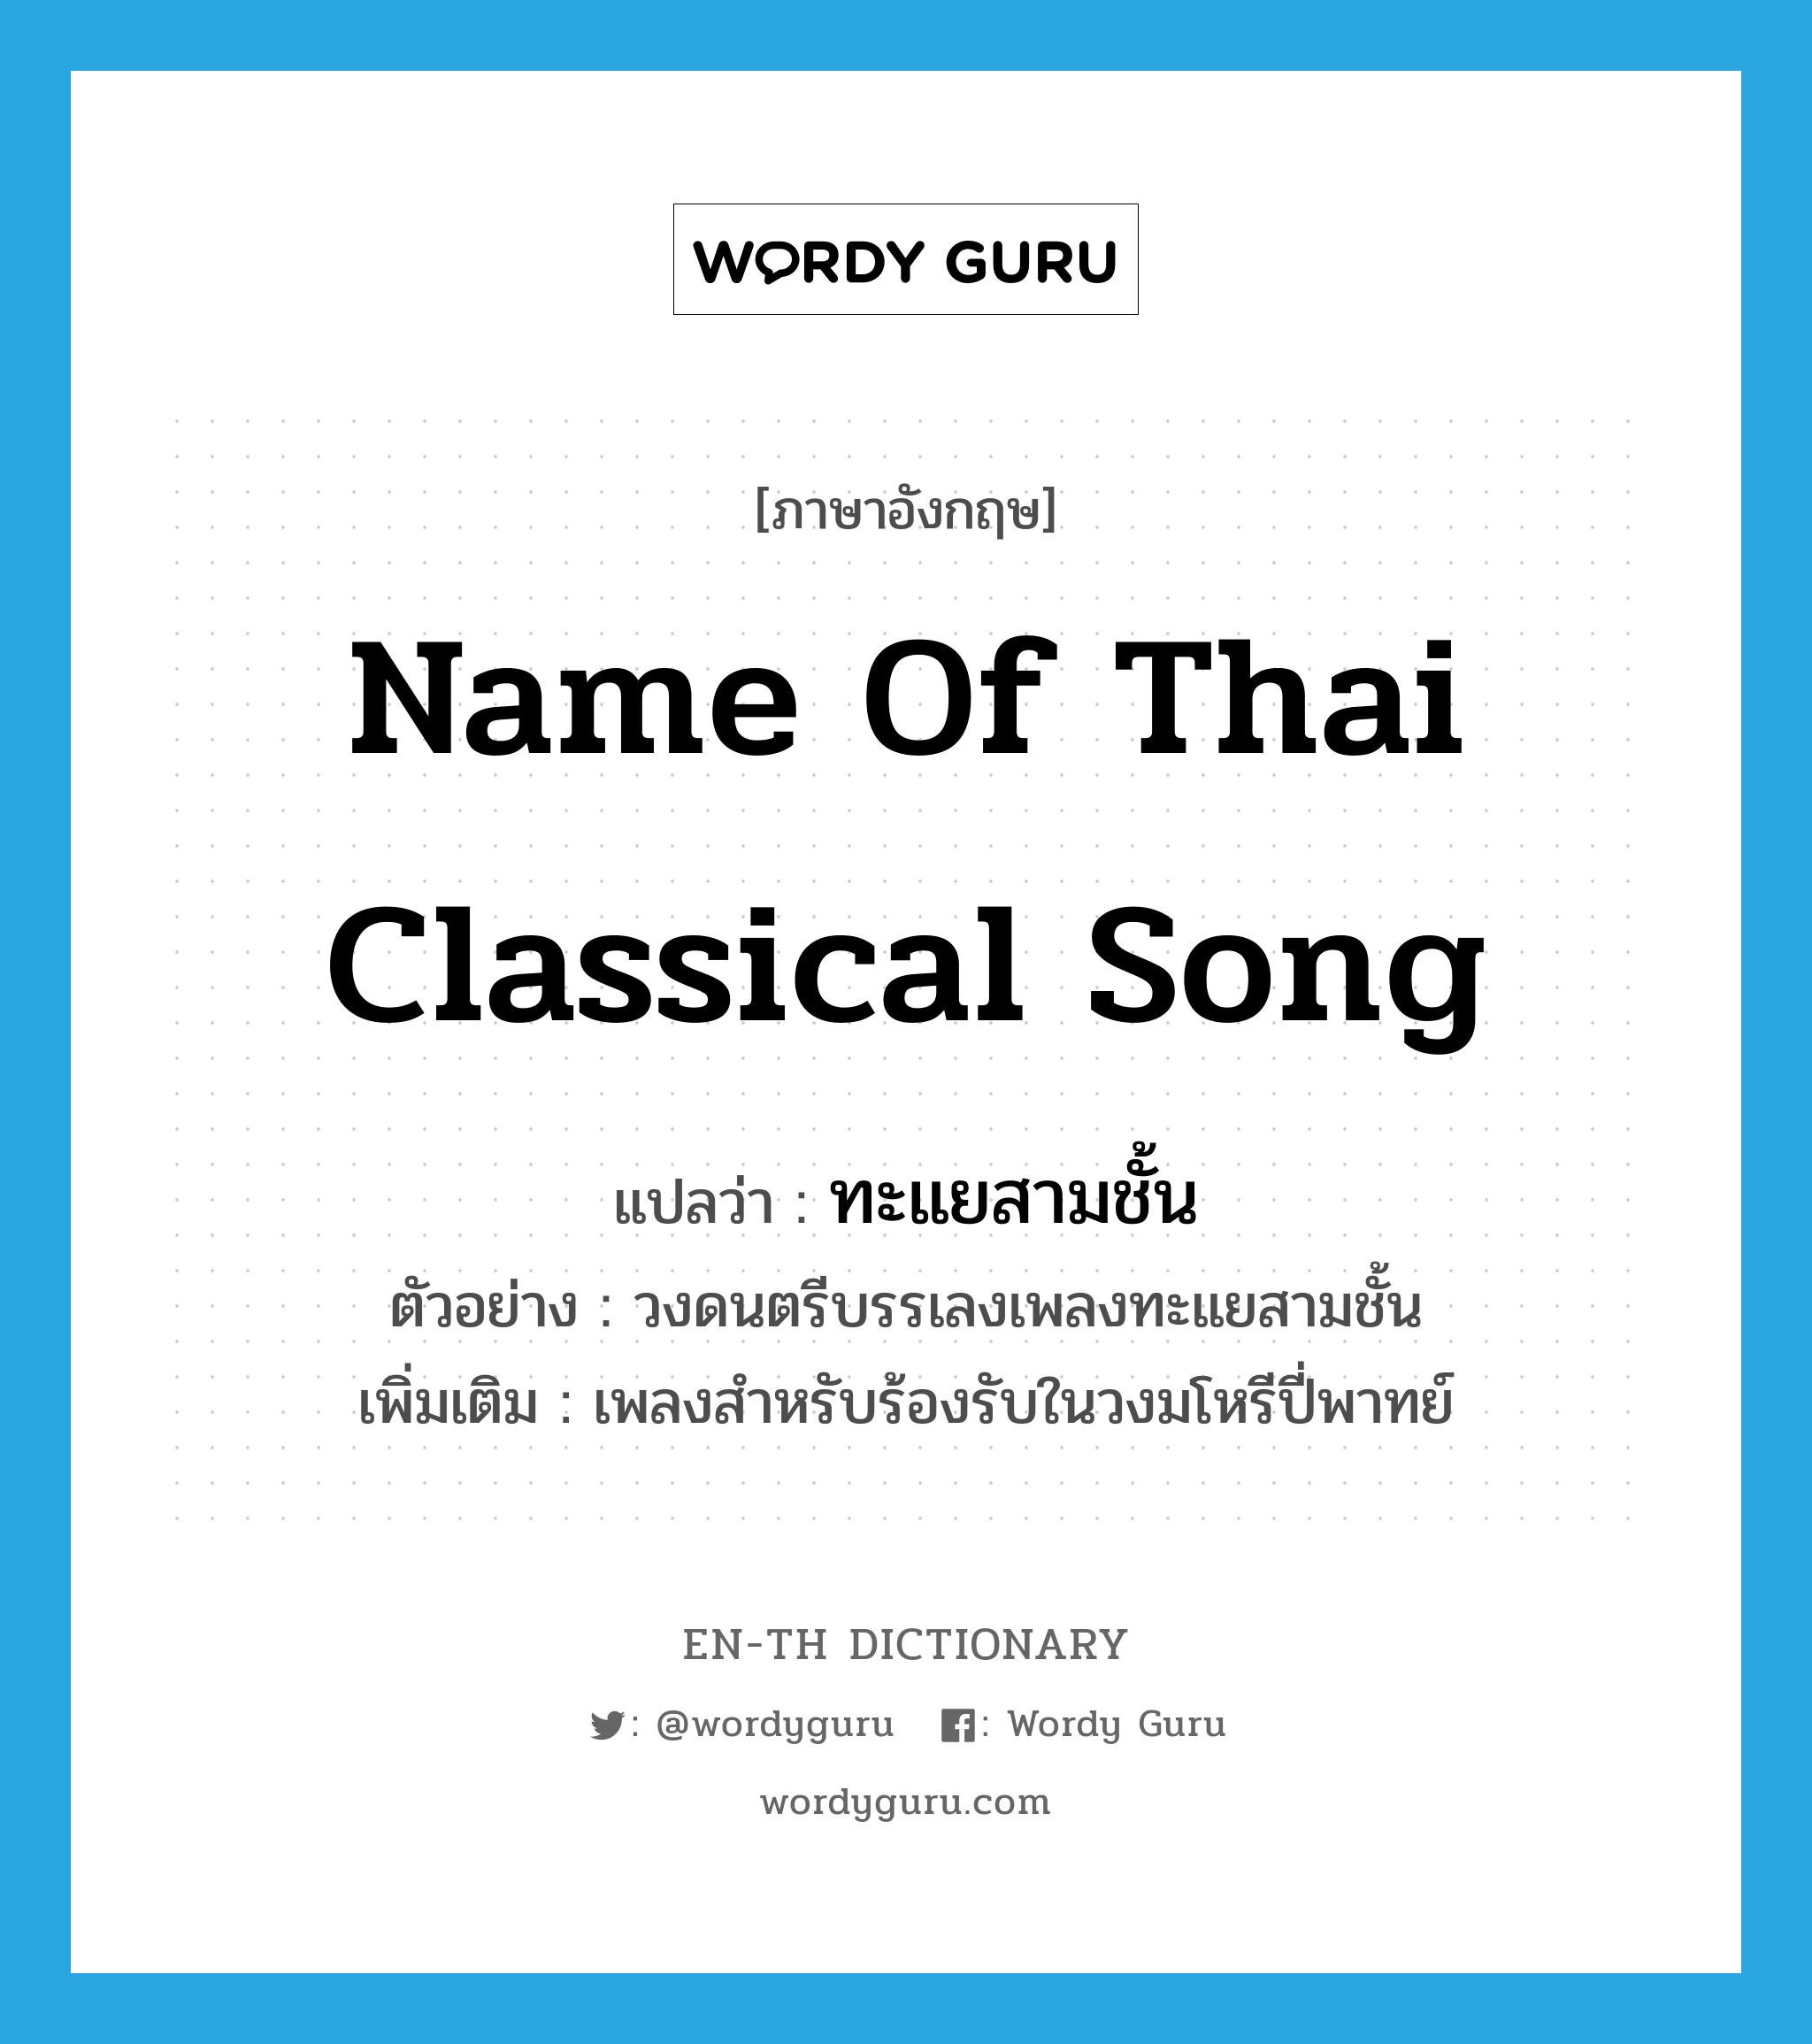 ทะแยสามชั้น ภาษาอังกฤษ?, คำศัพท์ภาษาอังกฤษ ทะแยสามชั้น แปลว่า name of Thai classical song ประเภท N ตัวอย่าง วงดนตรีบรรเลงเพลงทะแยสามชั้น เพิ่มเติม เพลงสำหรับร้องรับในวงมโหรีปี่พาทย์ หมวด N